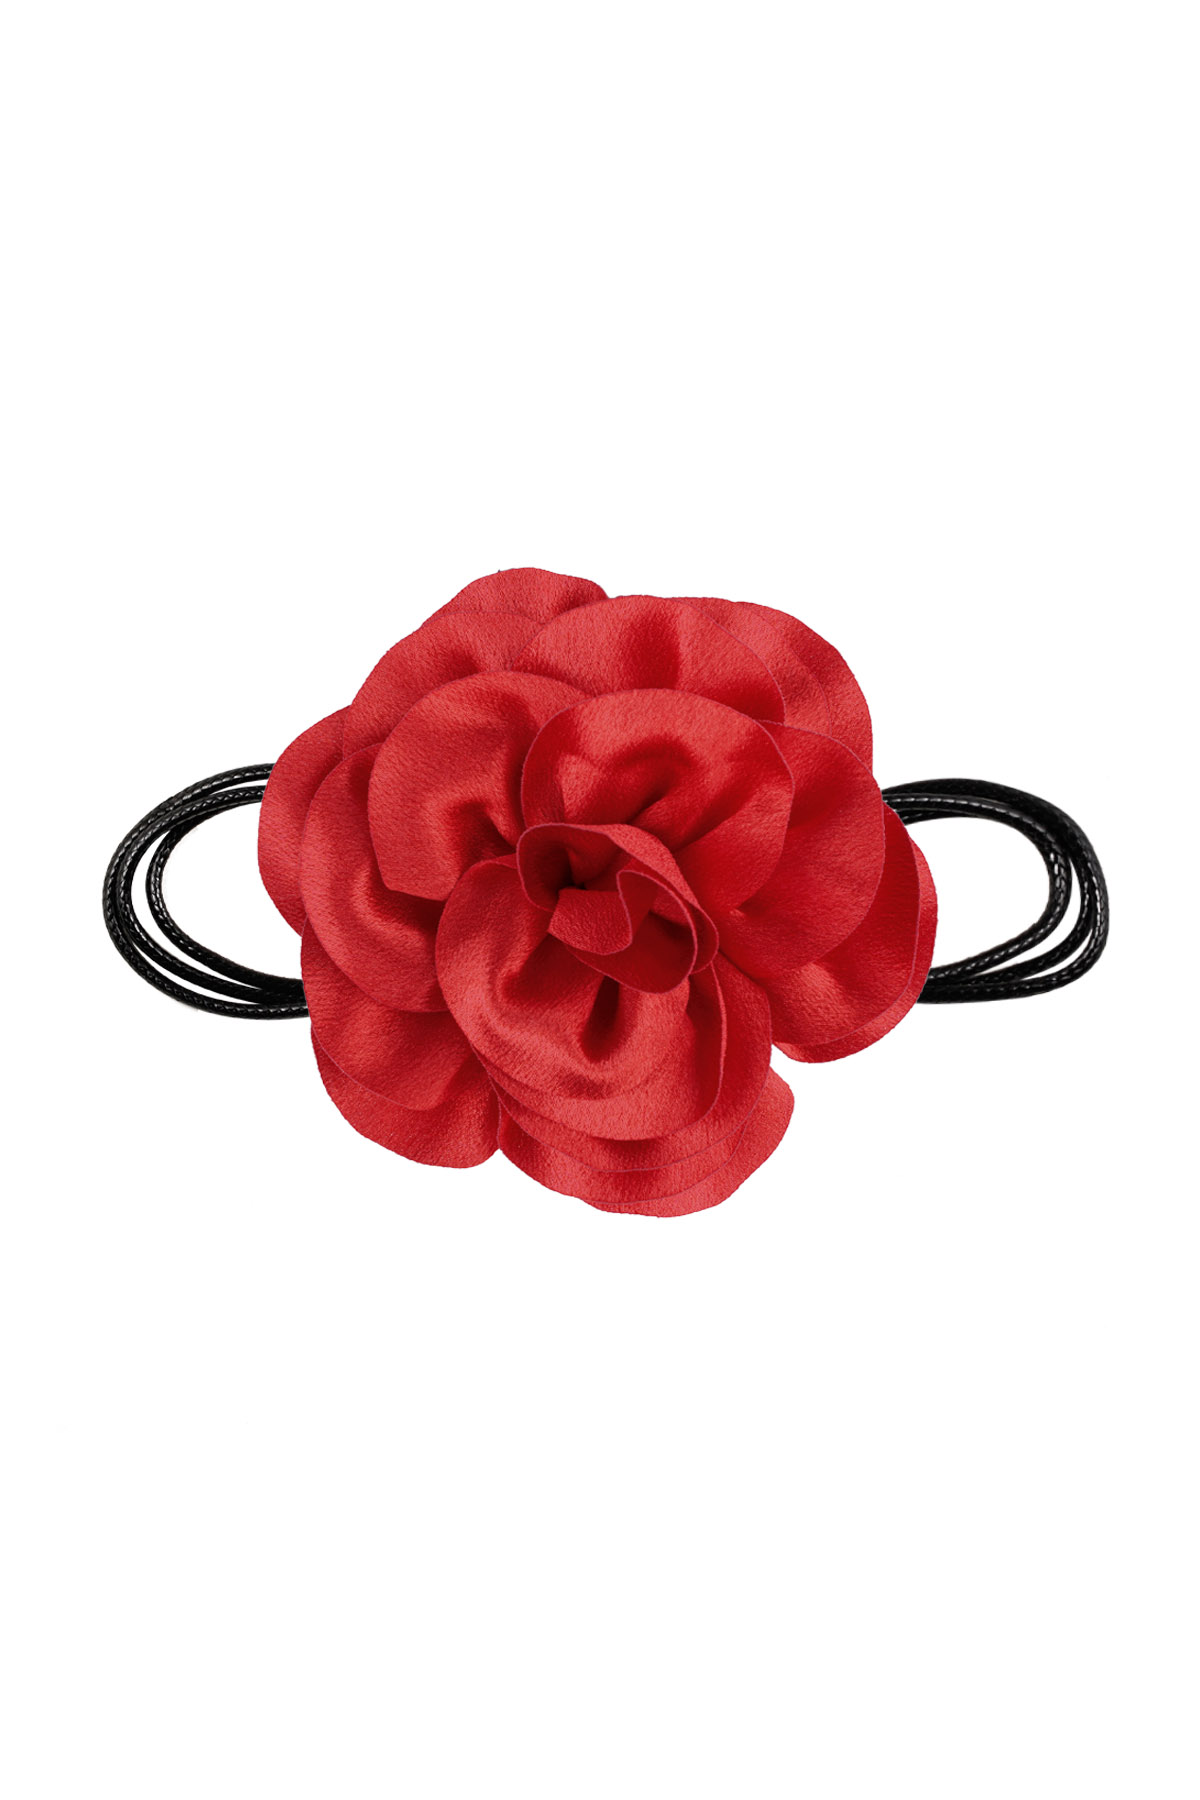 Halskette Seil glänzende Blume - rot h5 